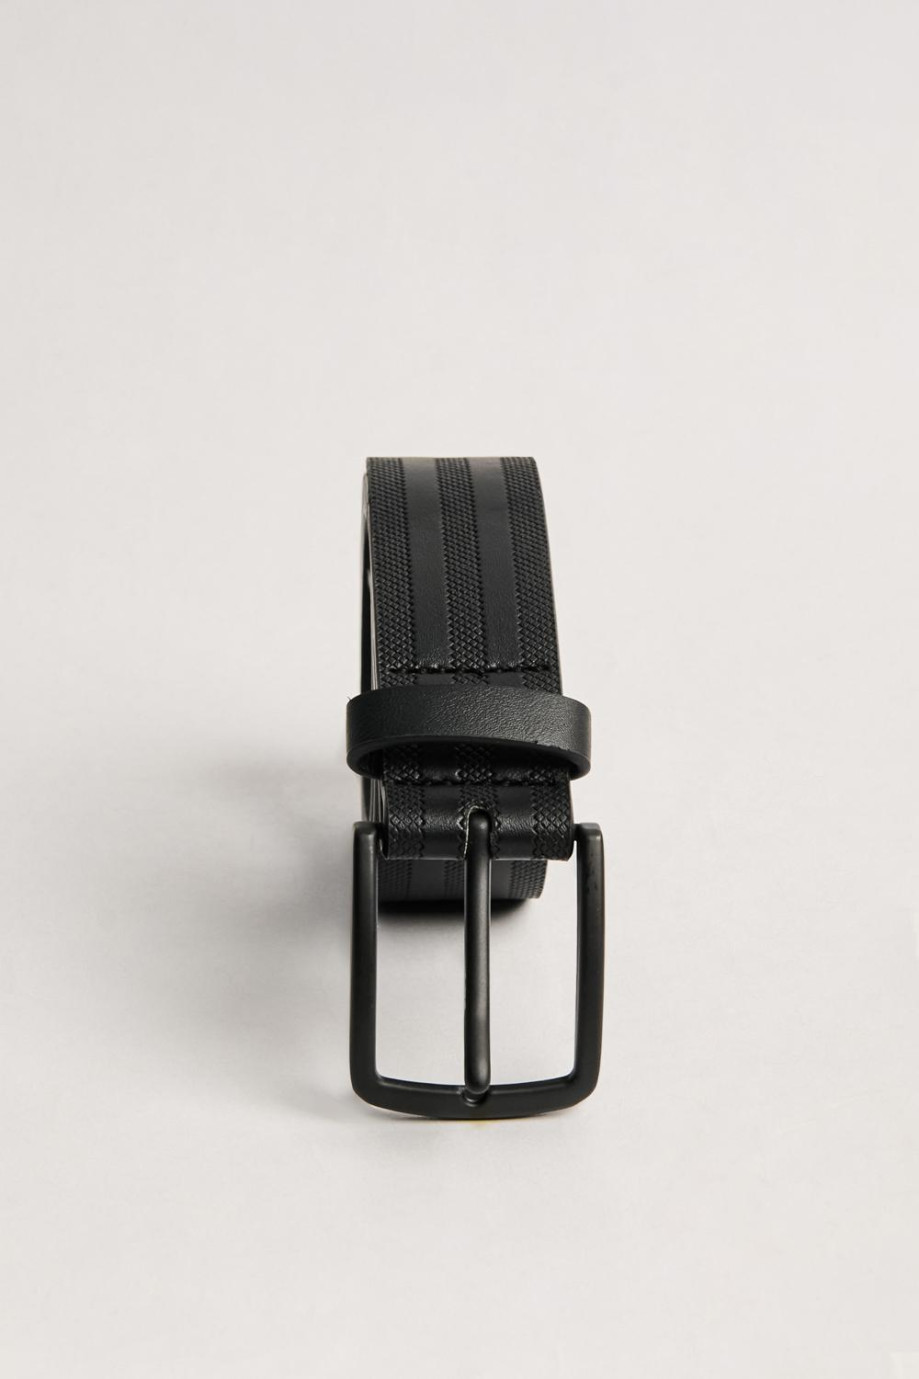 Cinturón negro con hebilla metálica y texturas de líneas